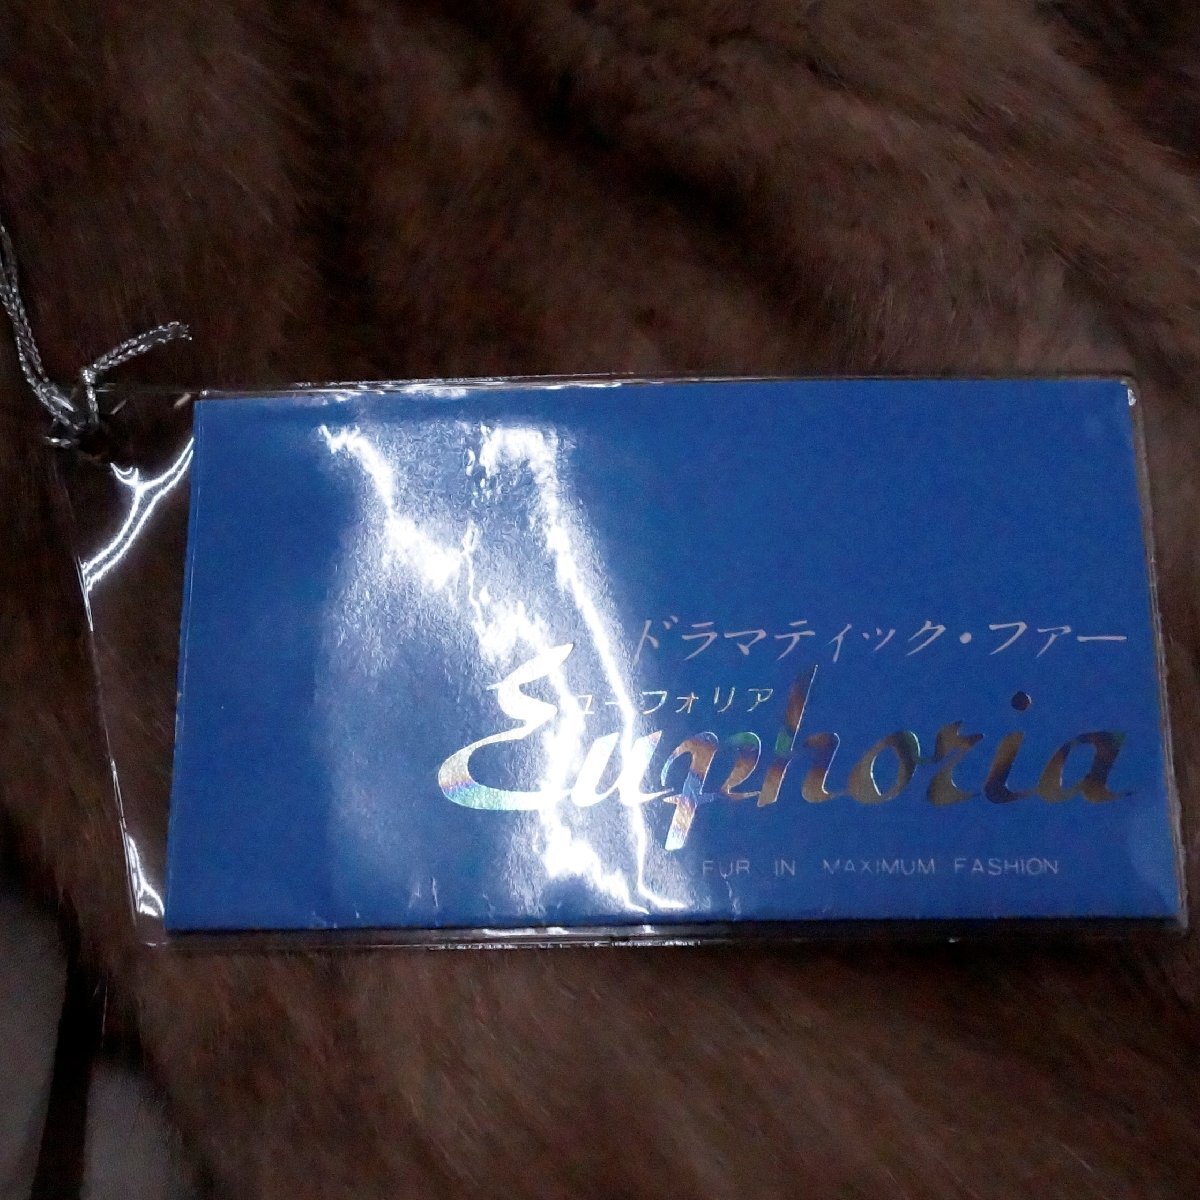 ユーフォリア Euphoria ミンク ハーフコート サイズ 13号 カラー パステル 444-7459 タグ付き 裏地にネーム刺繍 少しシミありの画像3